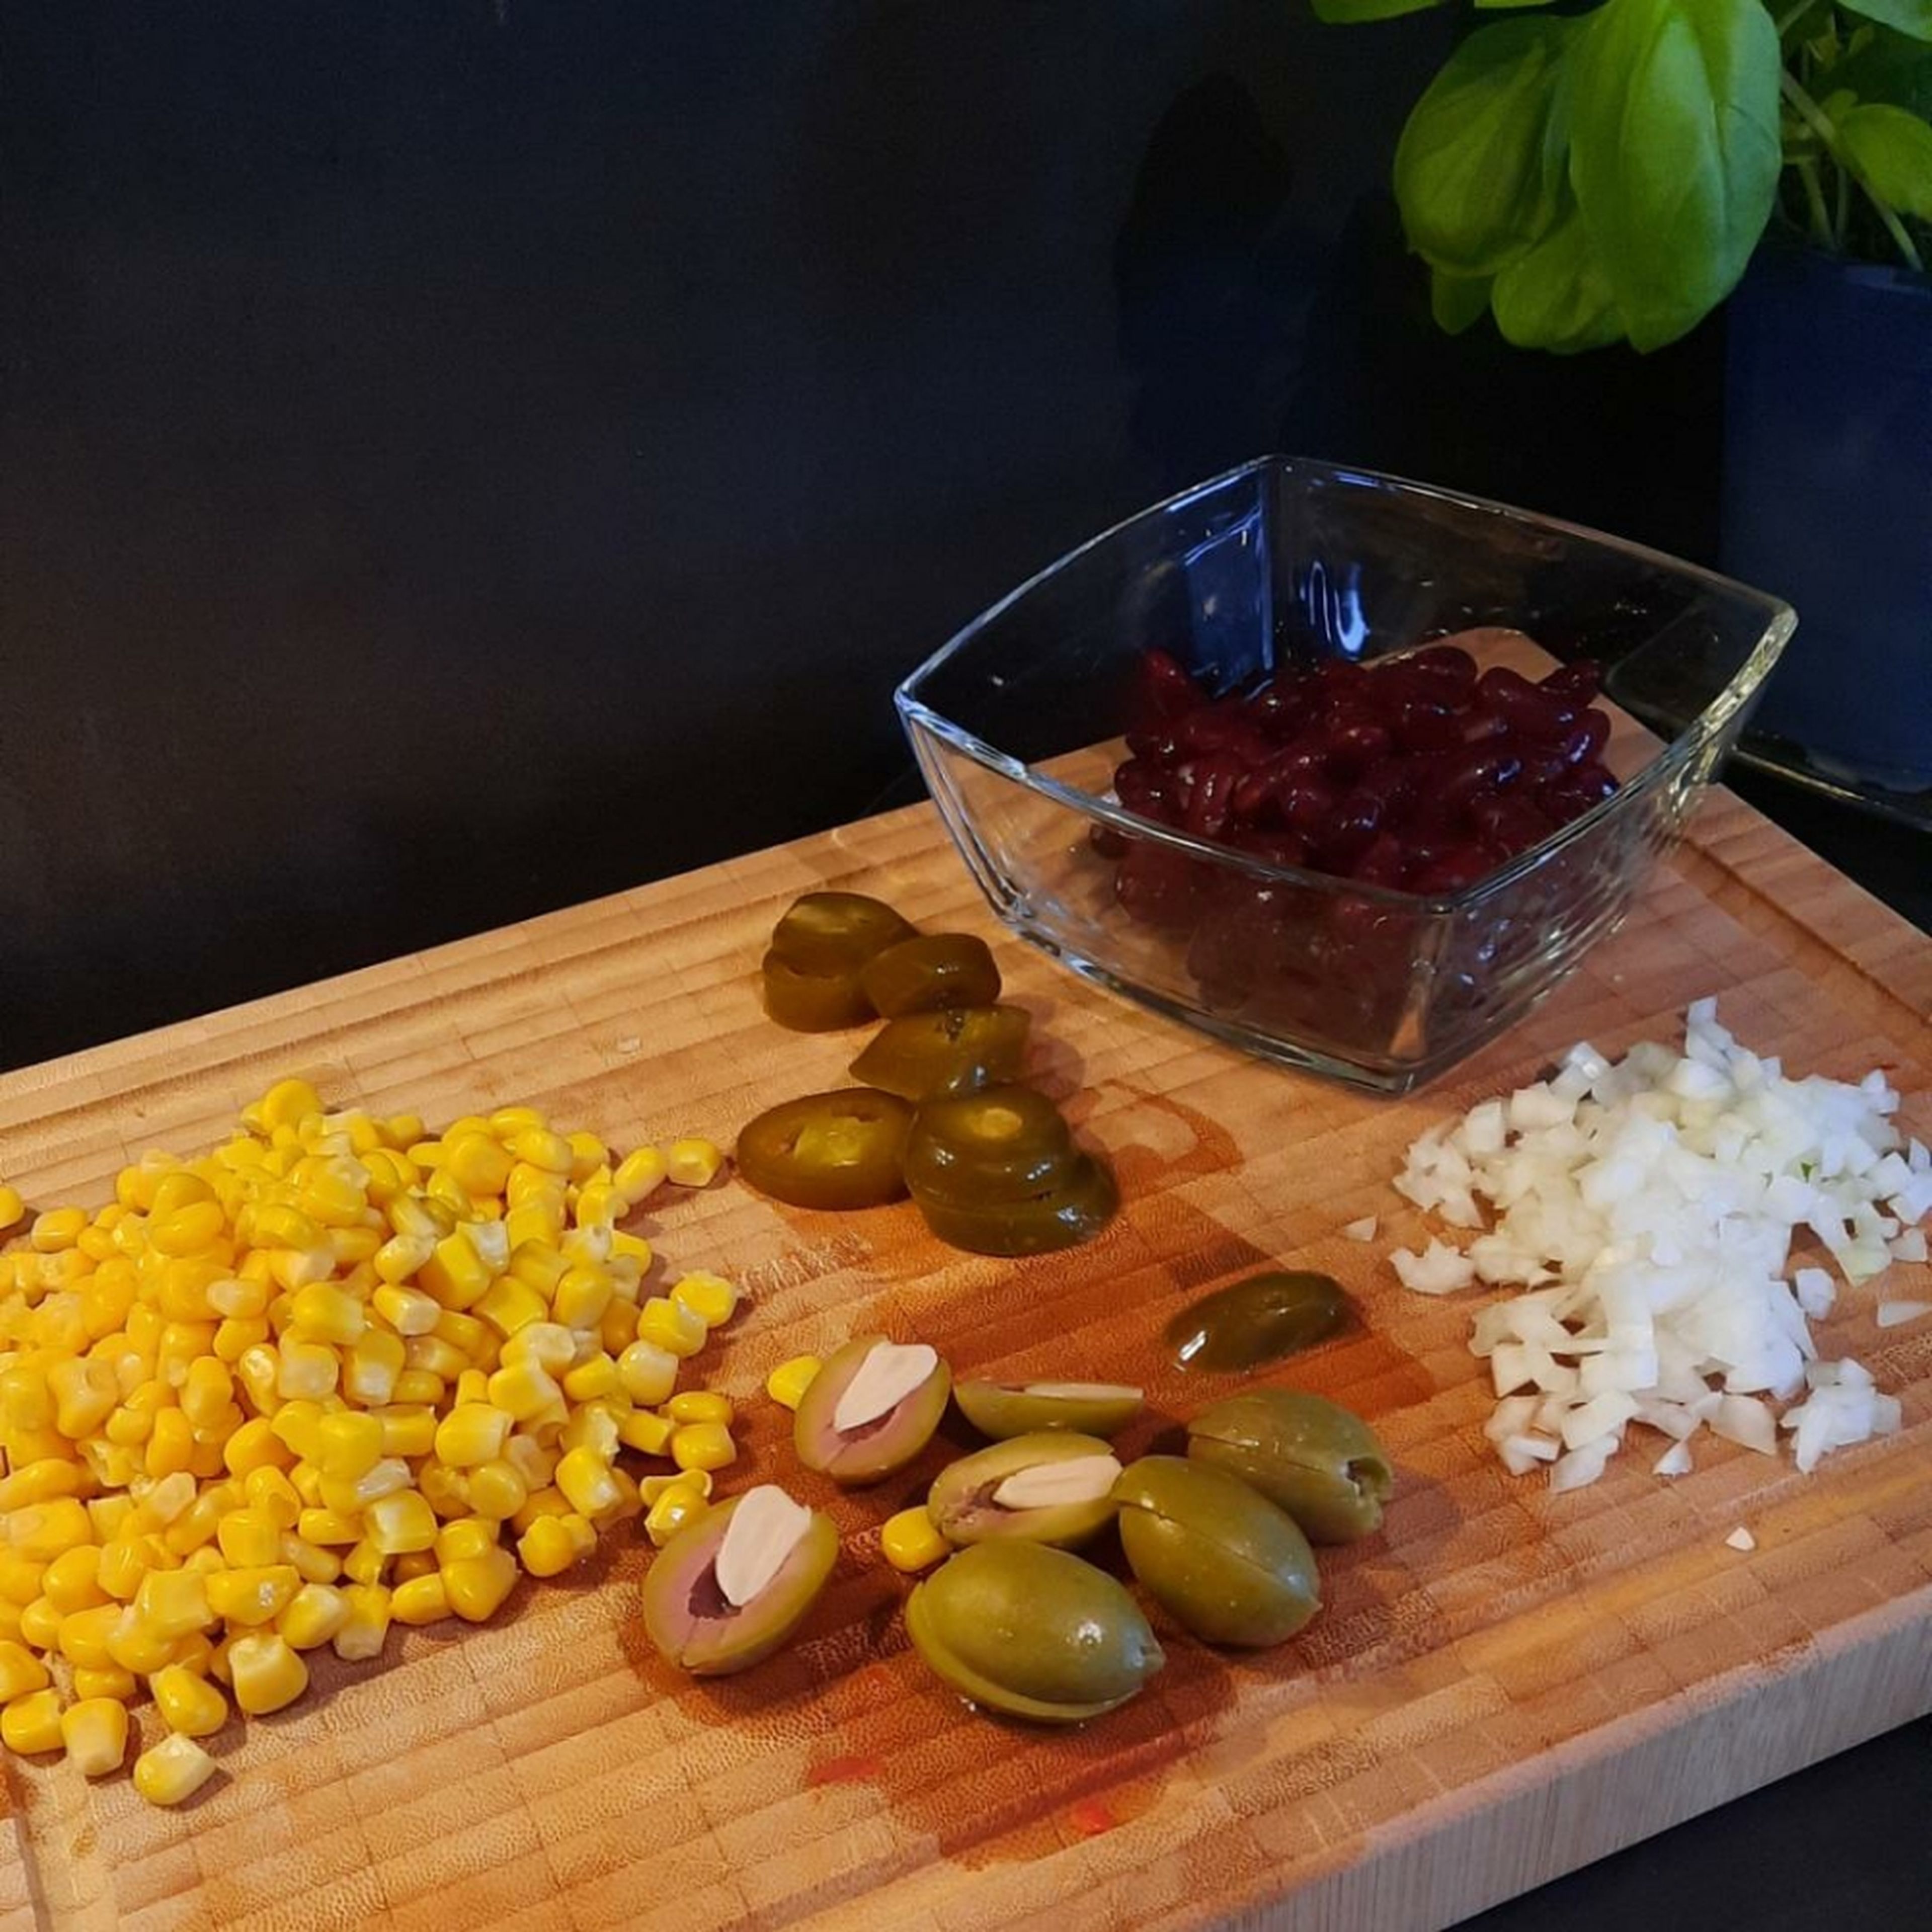 Zwiebel in Würfel schneiden, Oliven halbieren, Jalapeños, Bohnen und Mais abtropfen lassen.